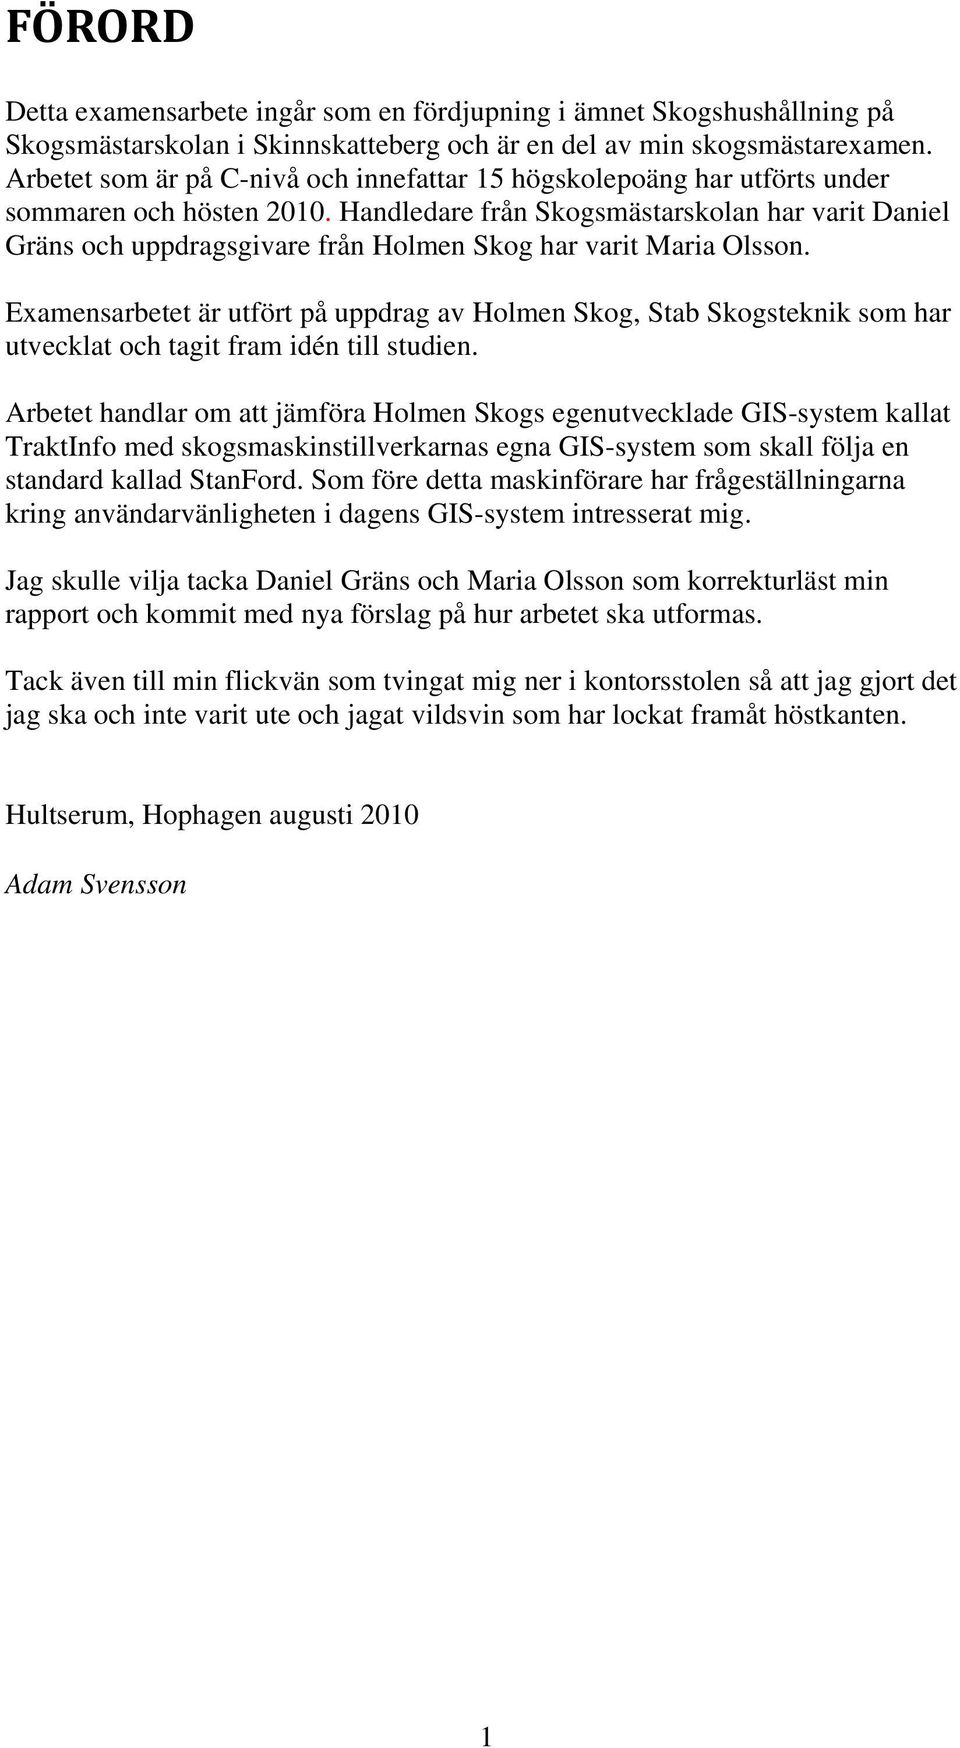 Handledare från Skogsmästarskolan har varit Daniel Gräns och uppdragsgivare från Holmen Skog har varit Maria Olsson.